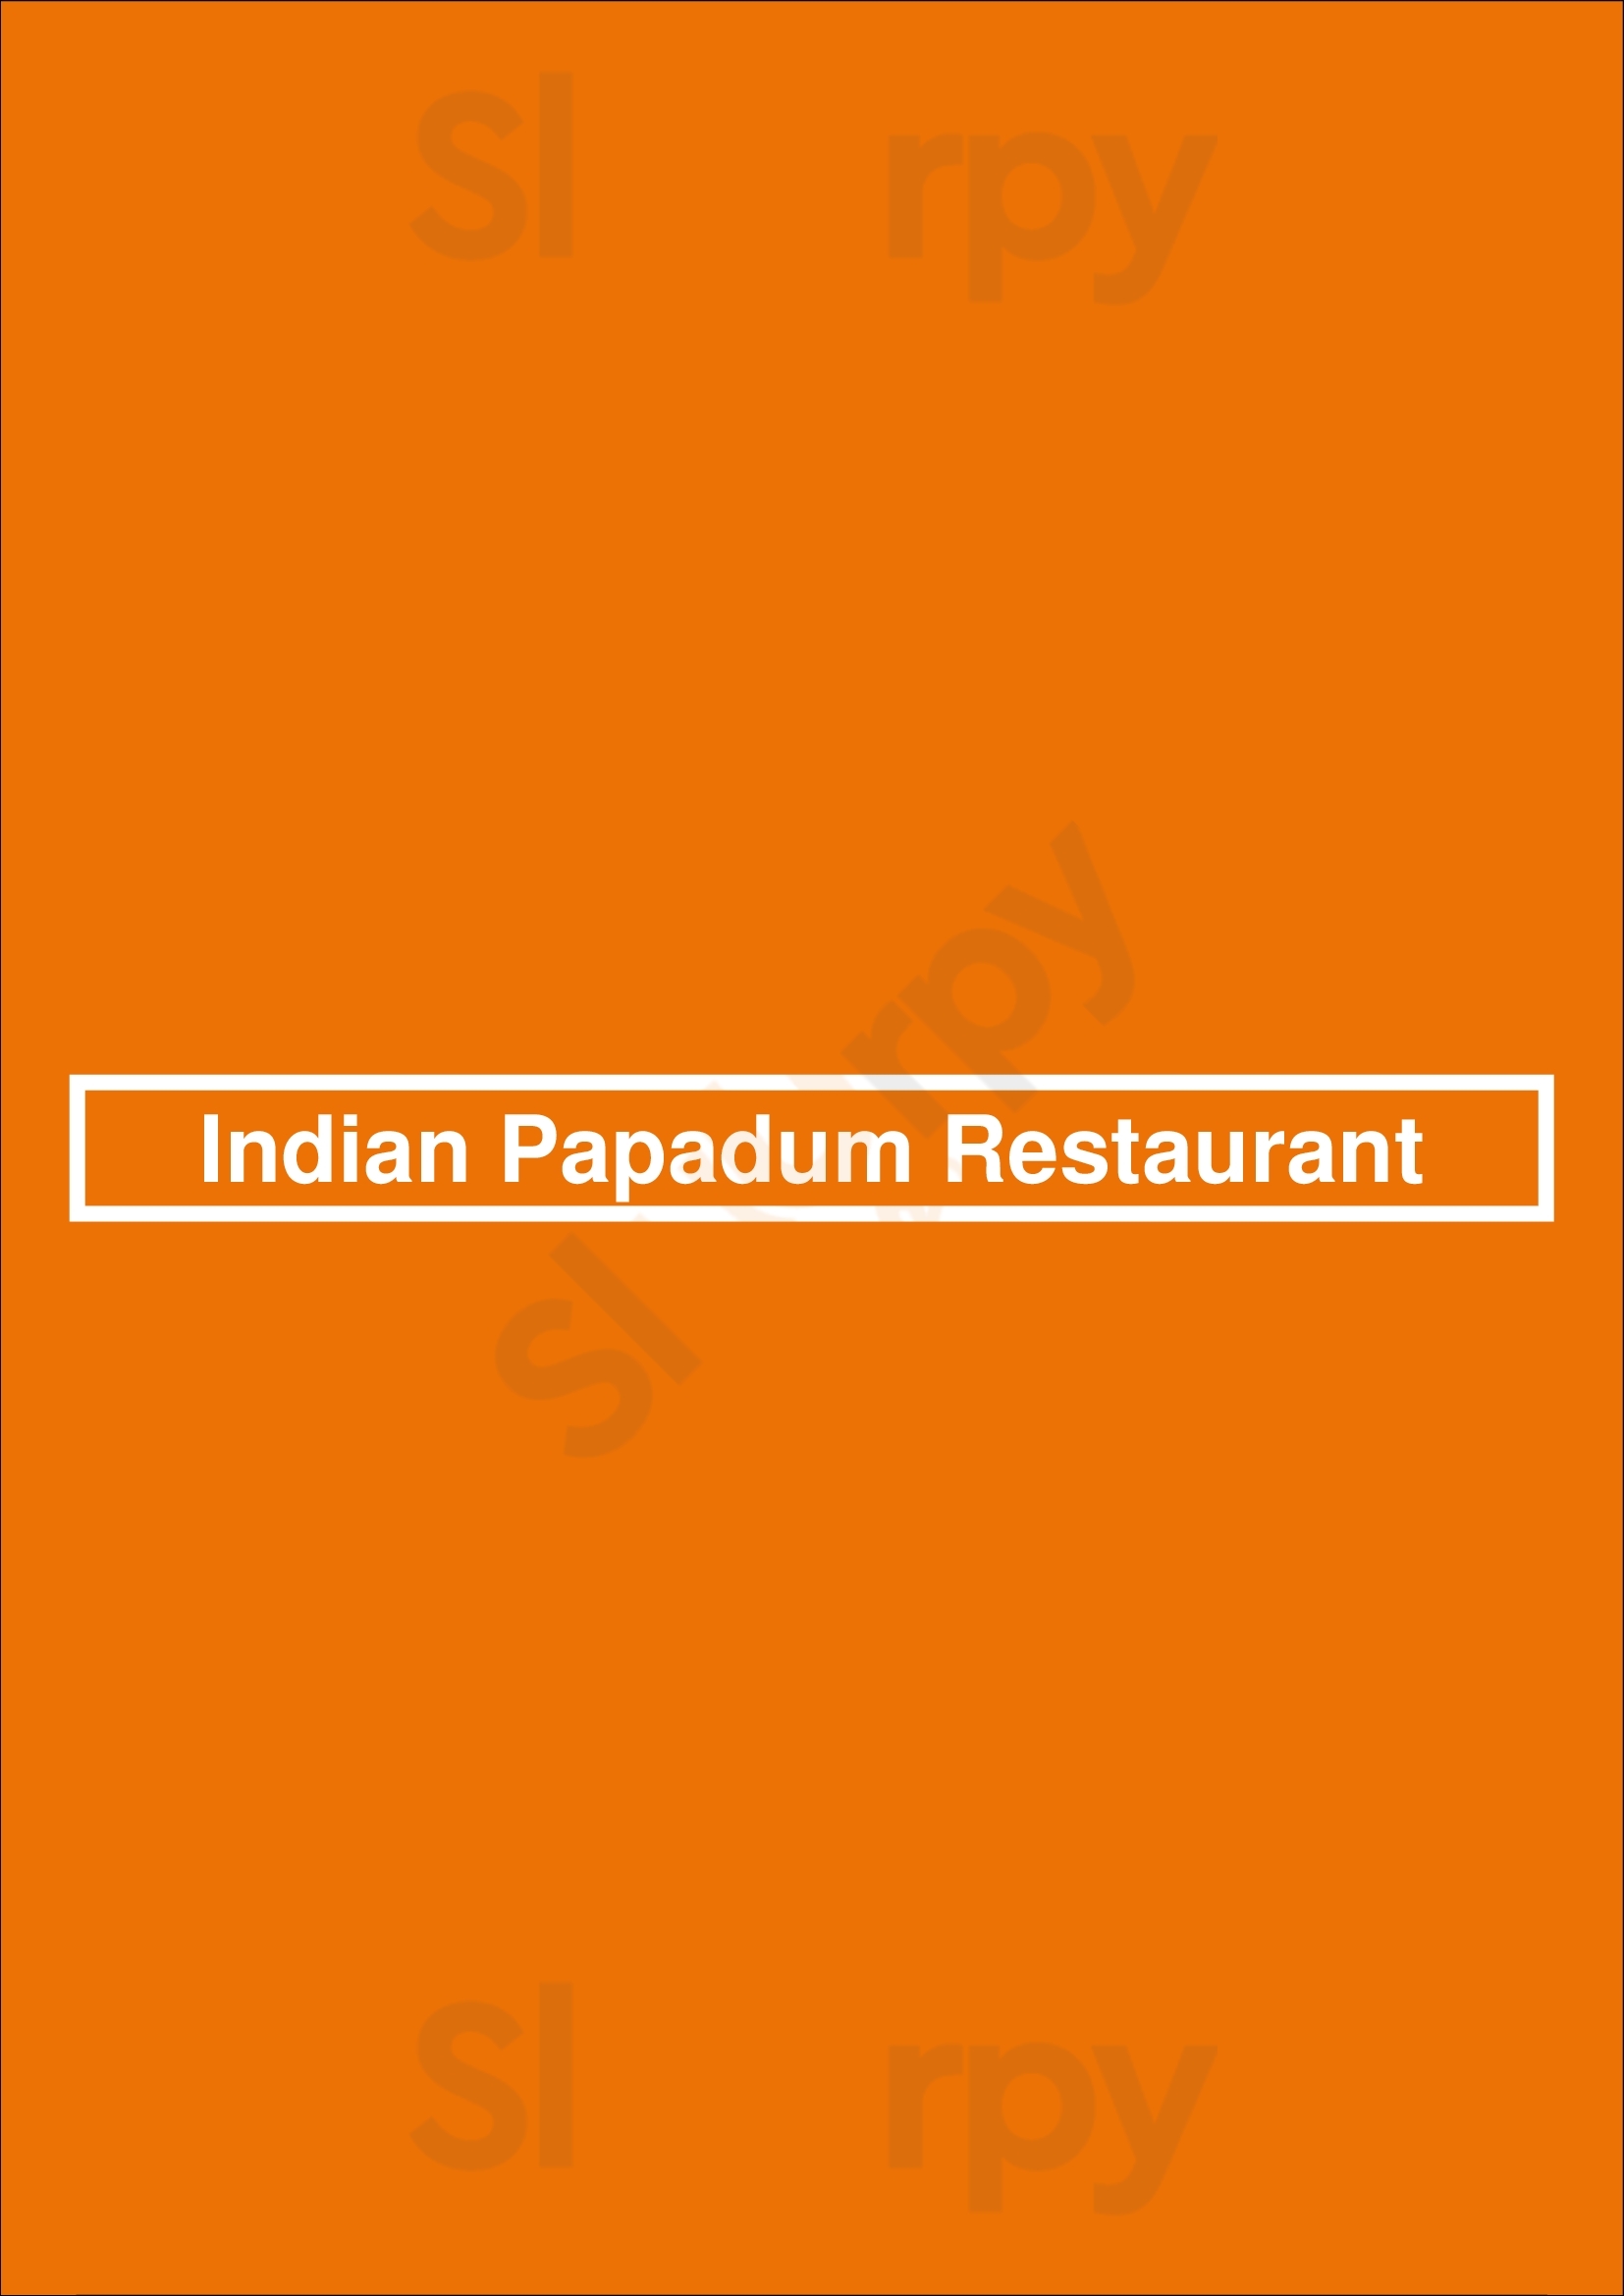 Indian Papadum Restaurant Portimão Menu - 1